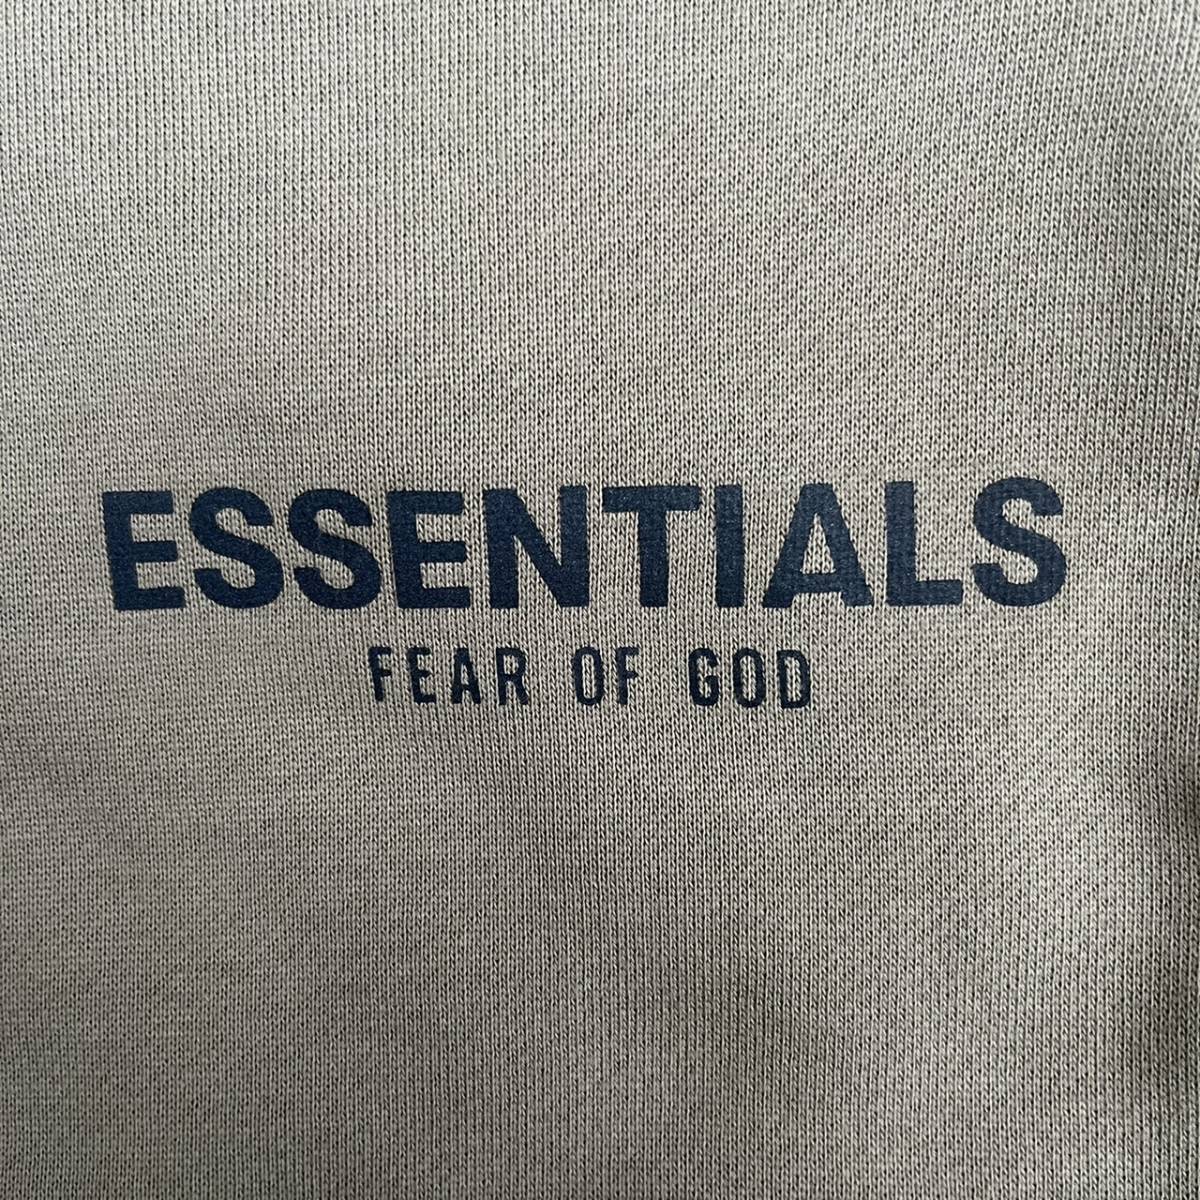 新品 FOG Fear Of God Essentials フィアオブゴッド エッセンシャルズ Mサイズ LOGO ショーツ ハーフパンツ オリーブ Olive